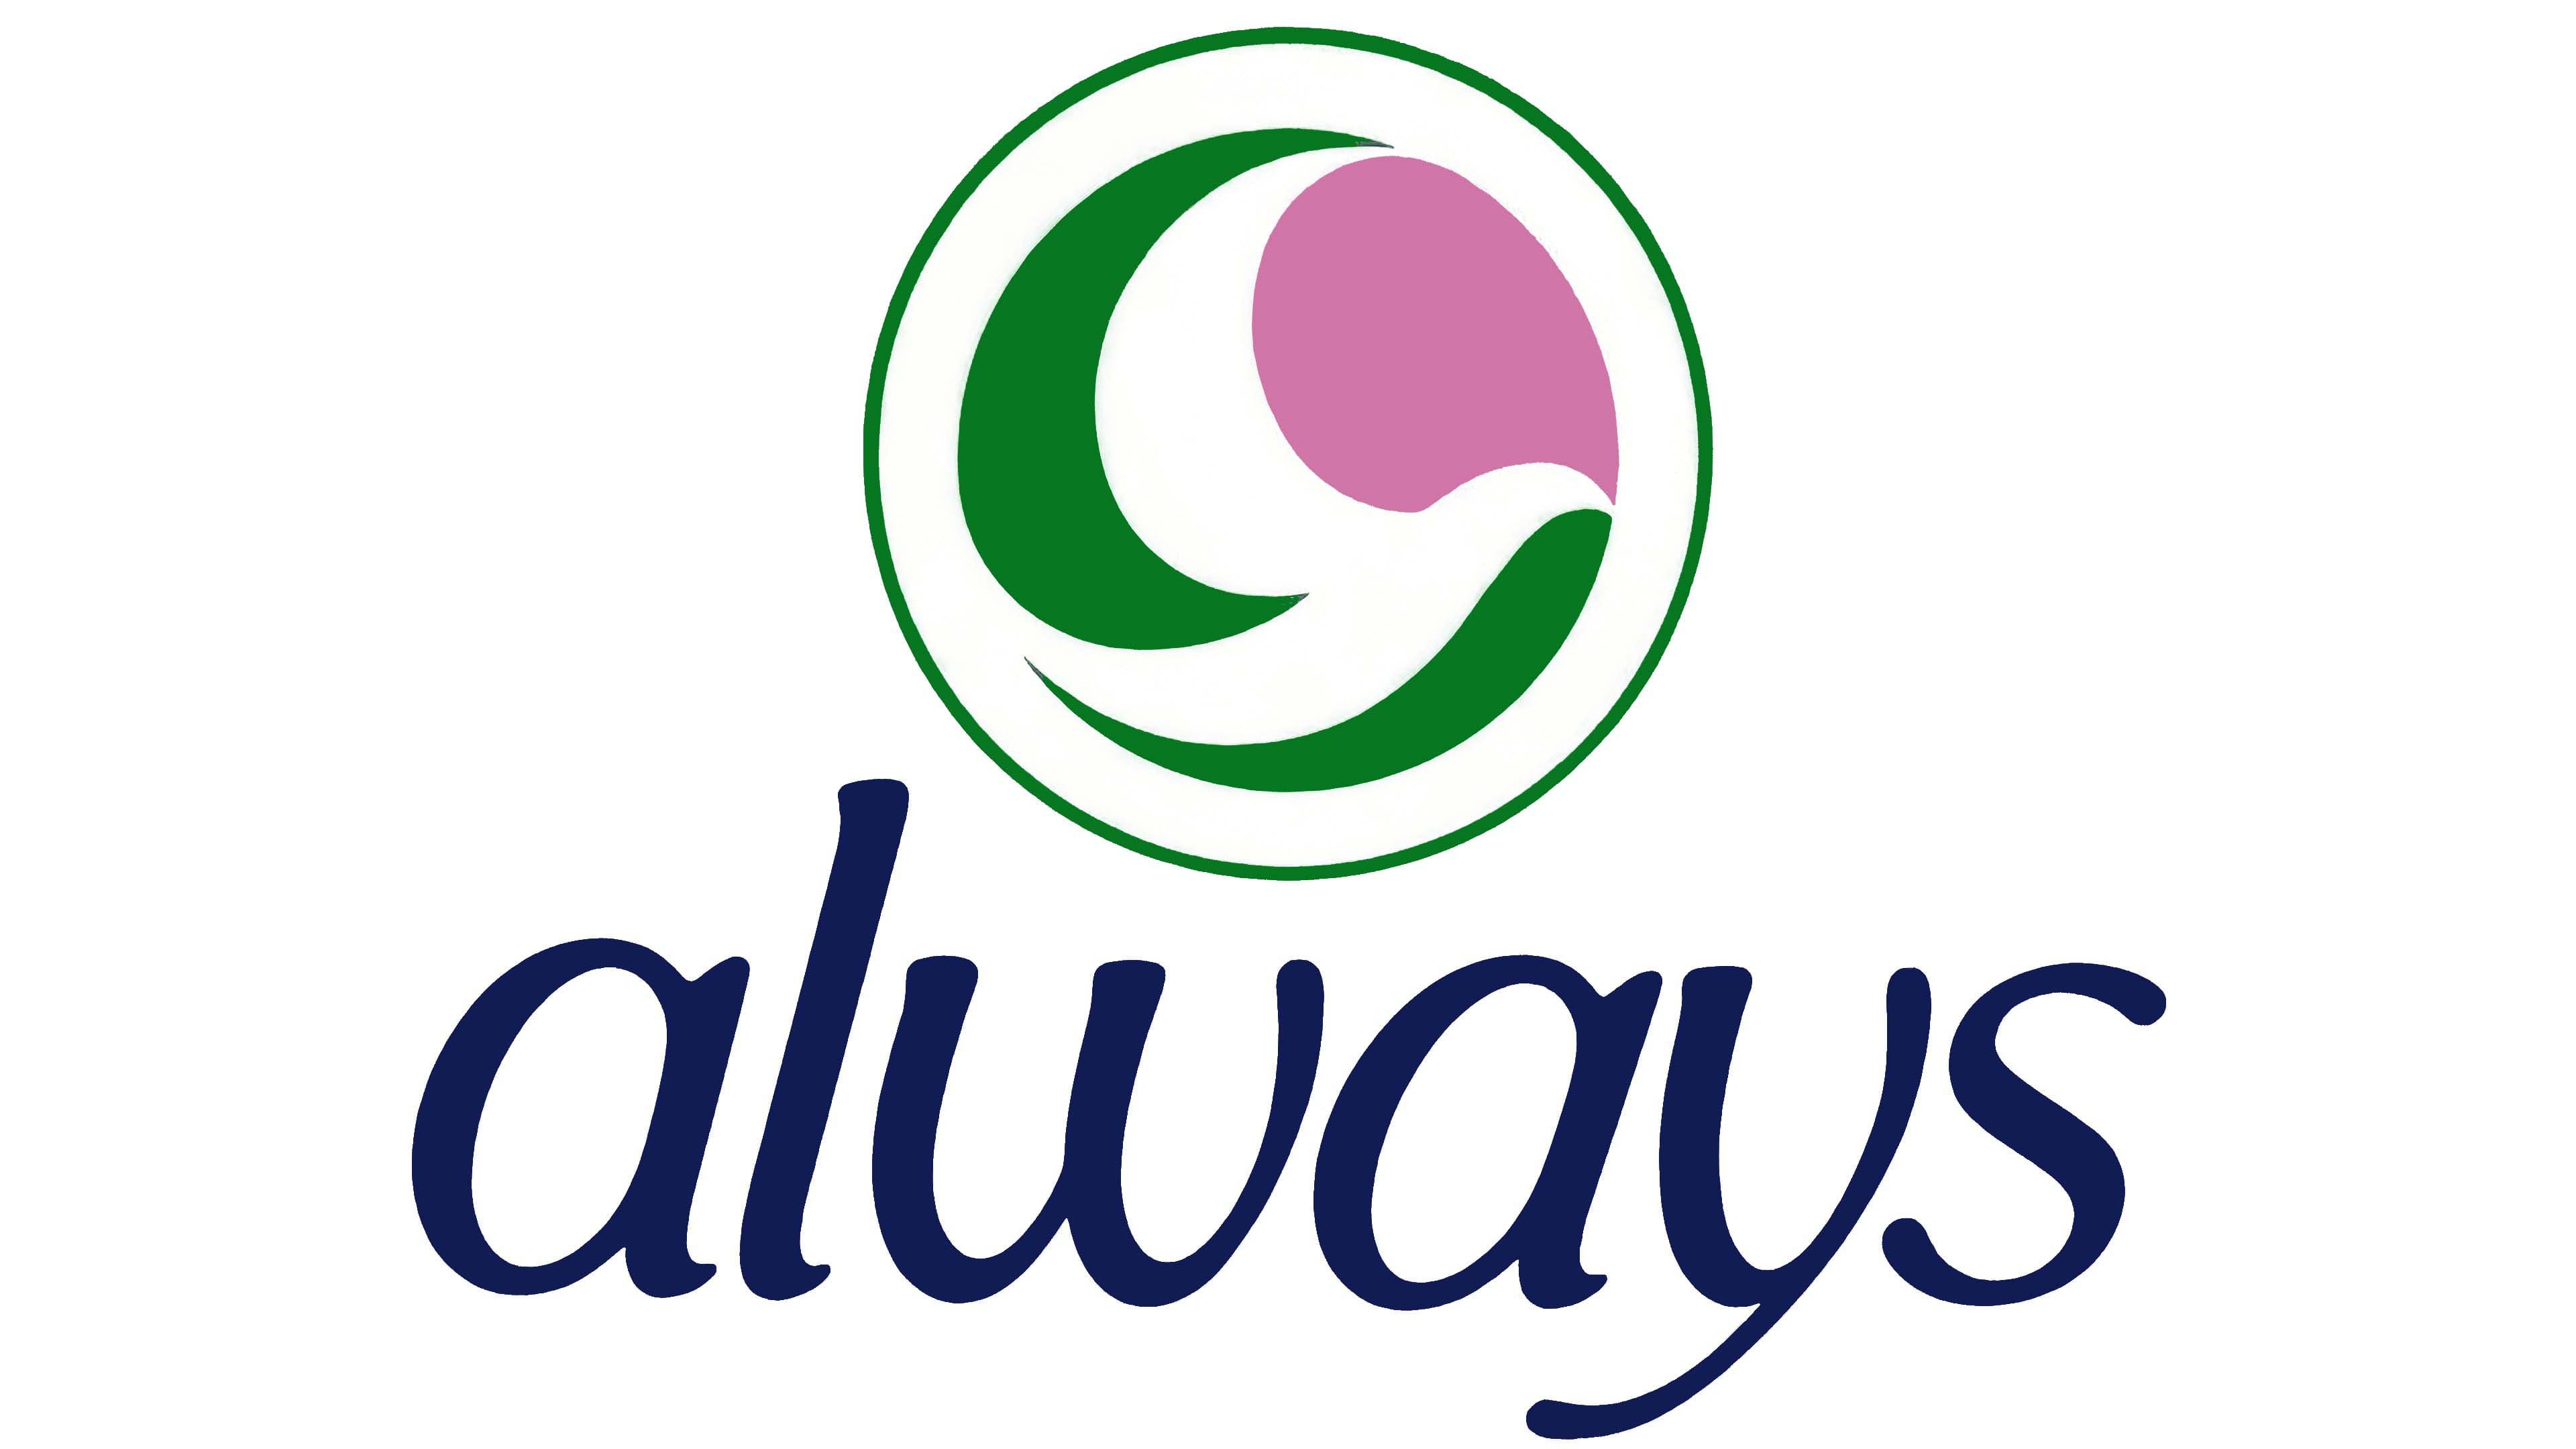 Mẫu thiết kế logo thương hiệu ALWAYS